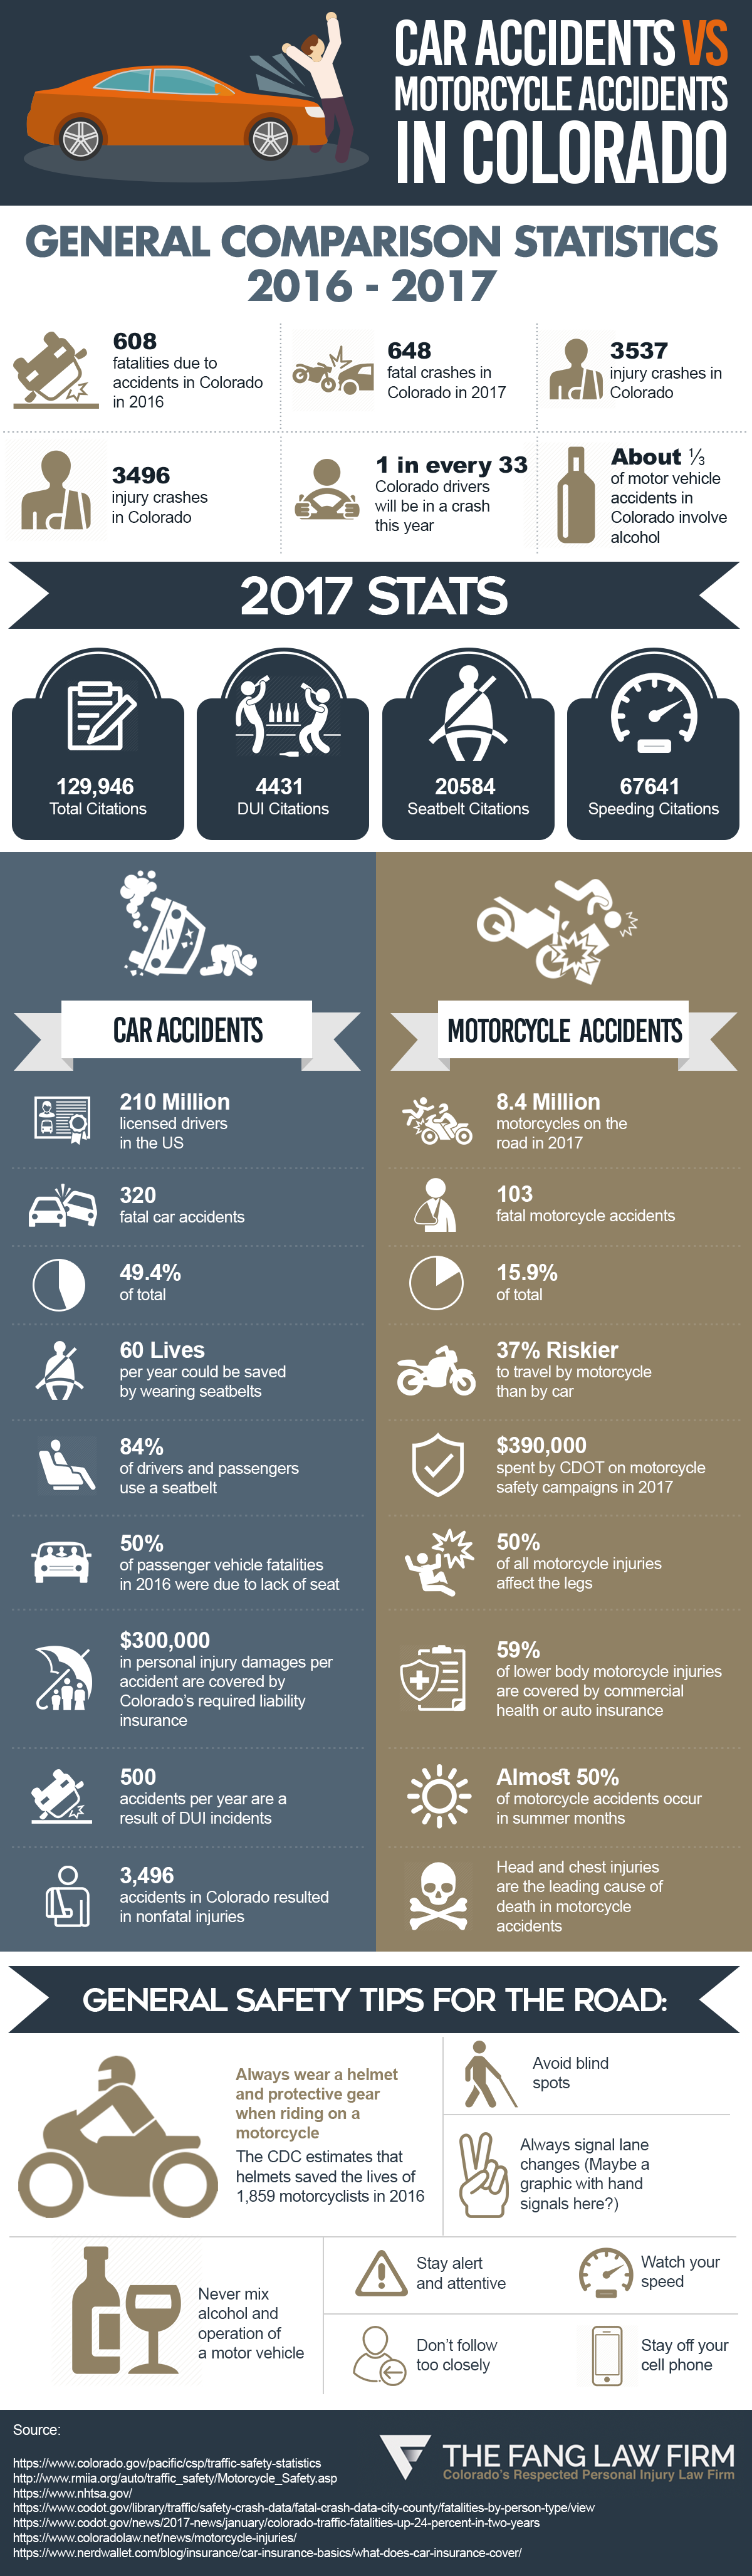 car-accidents-vs-motorcycle-accidents-denver-colorado